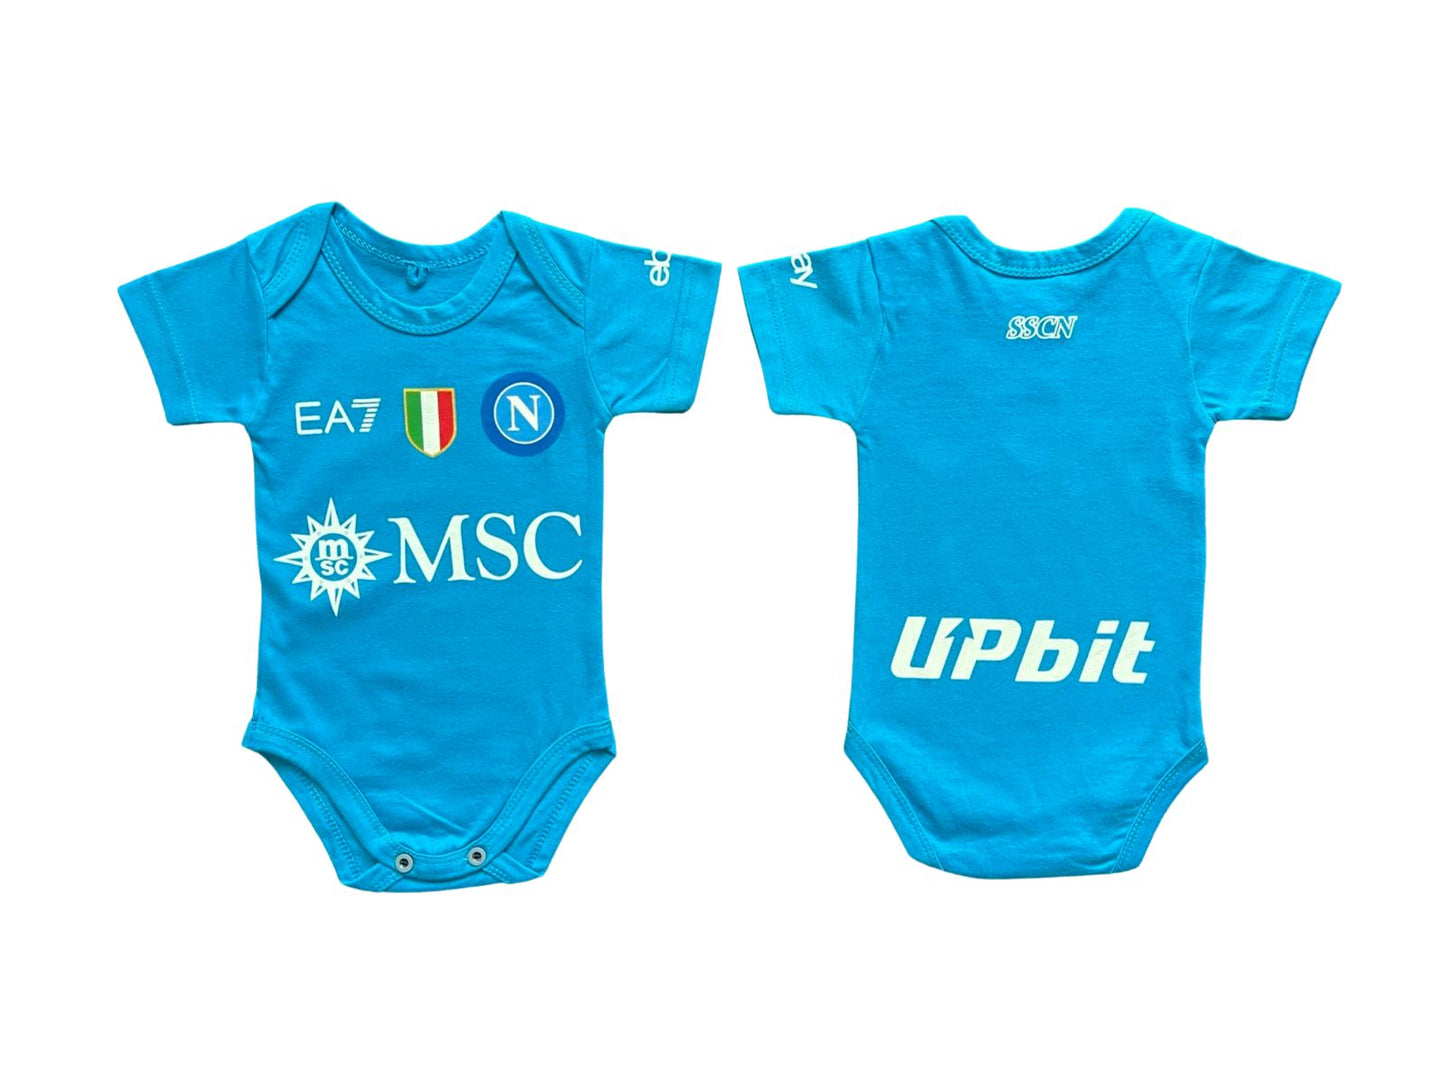 Special Edition Napoli Home baby jersey 23/24 Gli Azzurri